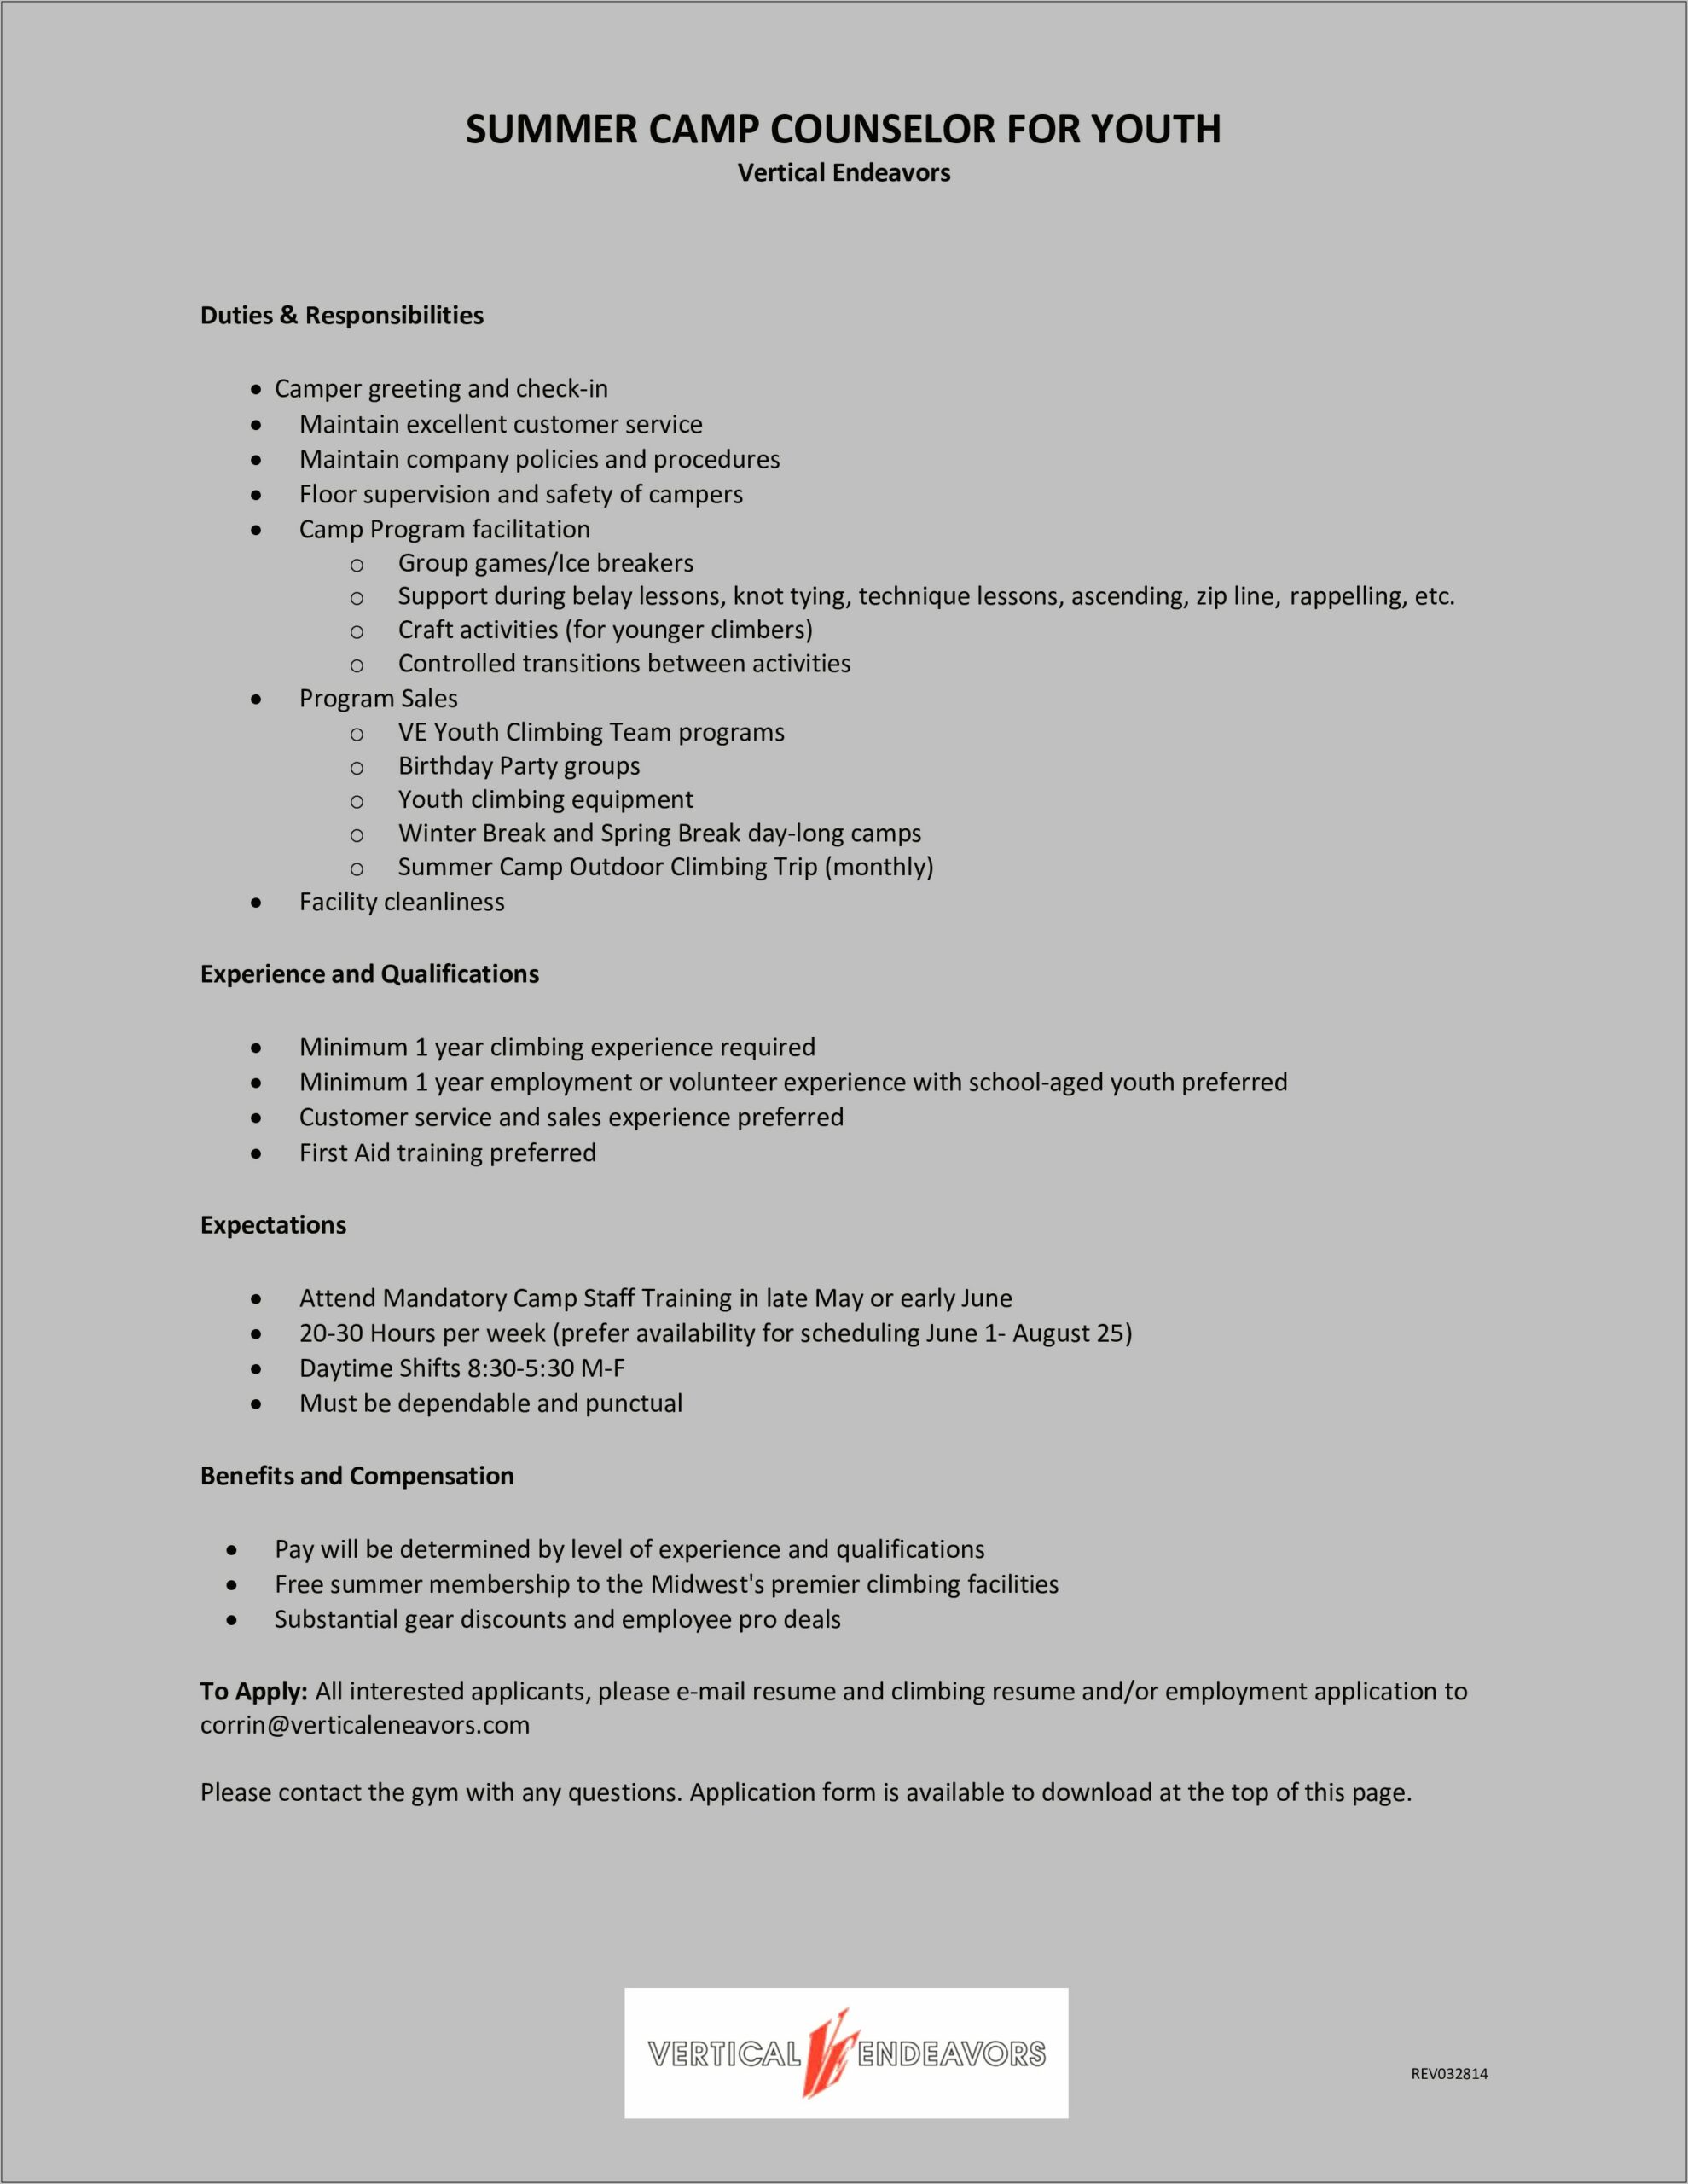 Resume Description For Staff Member At Gym